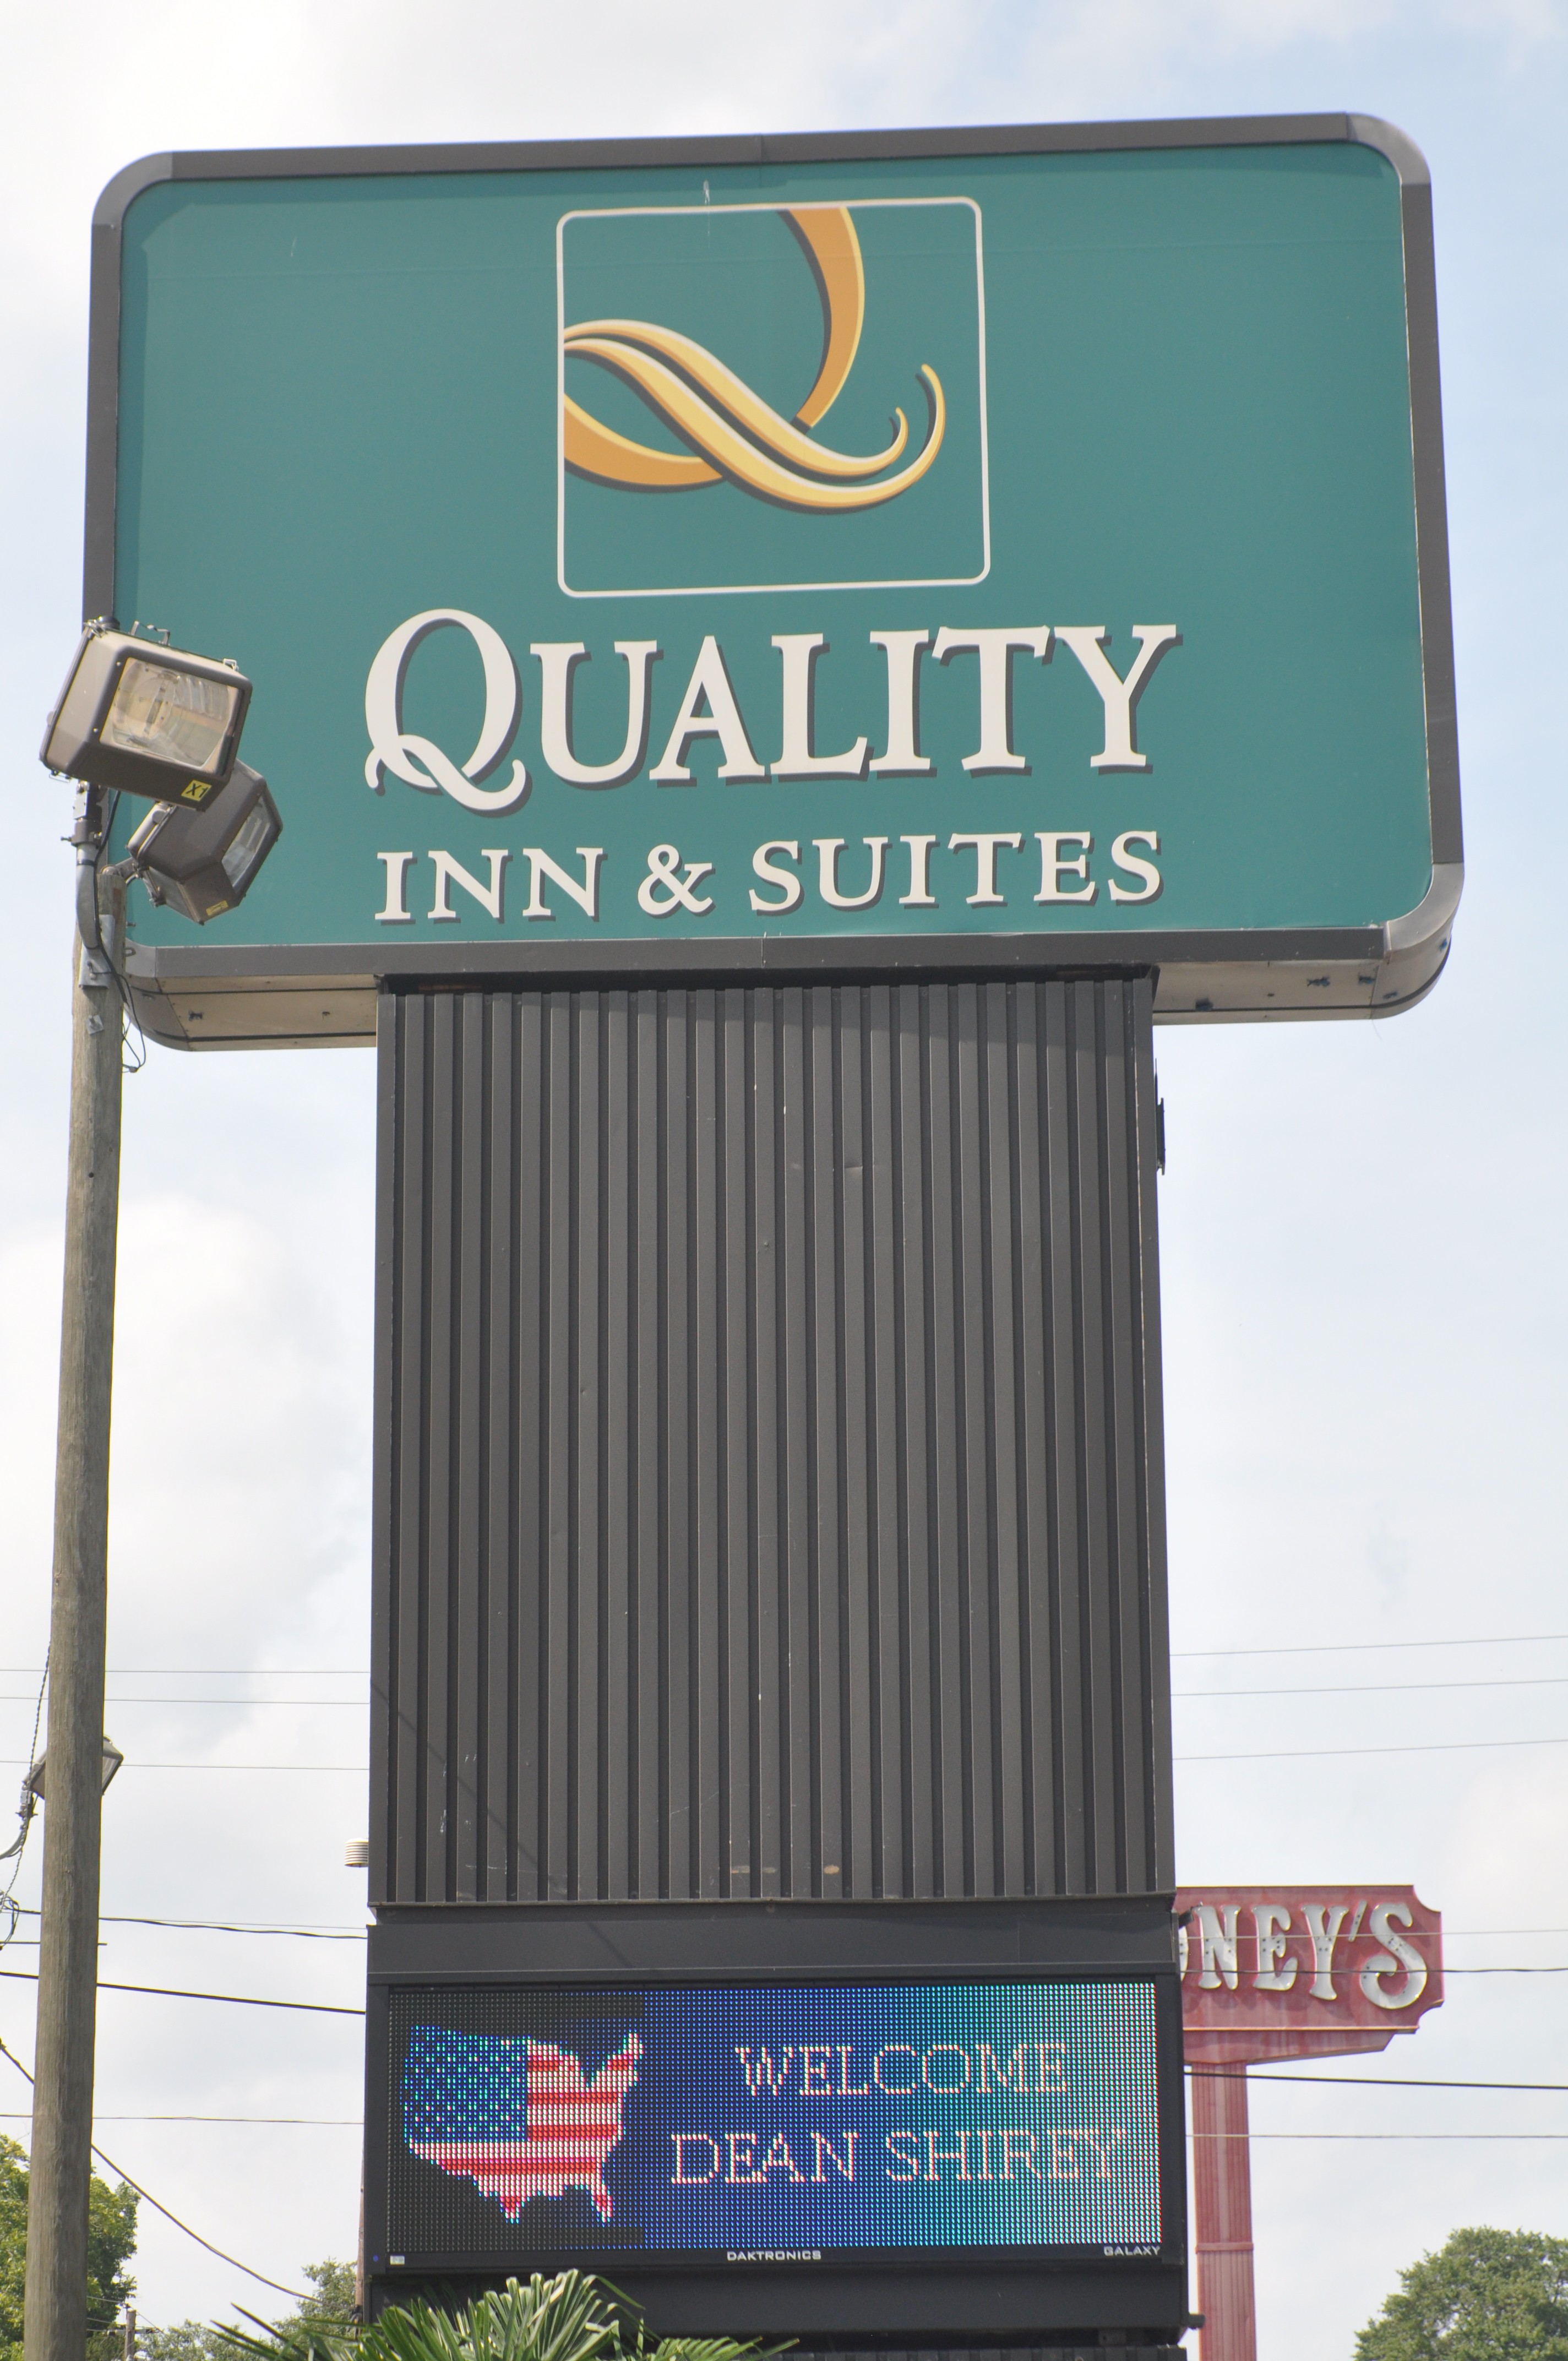 Quality Inn Billboard 2